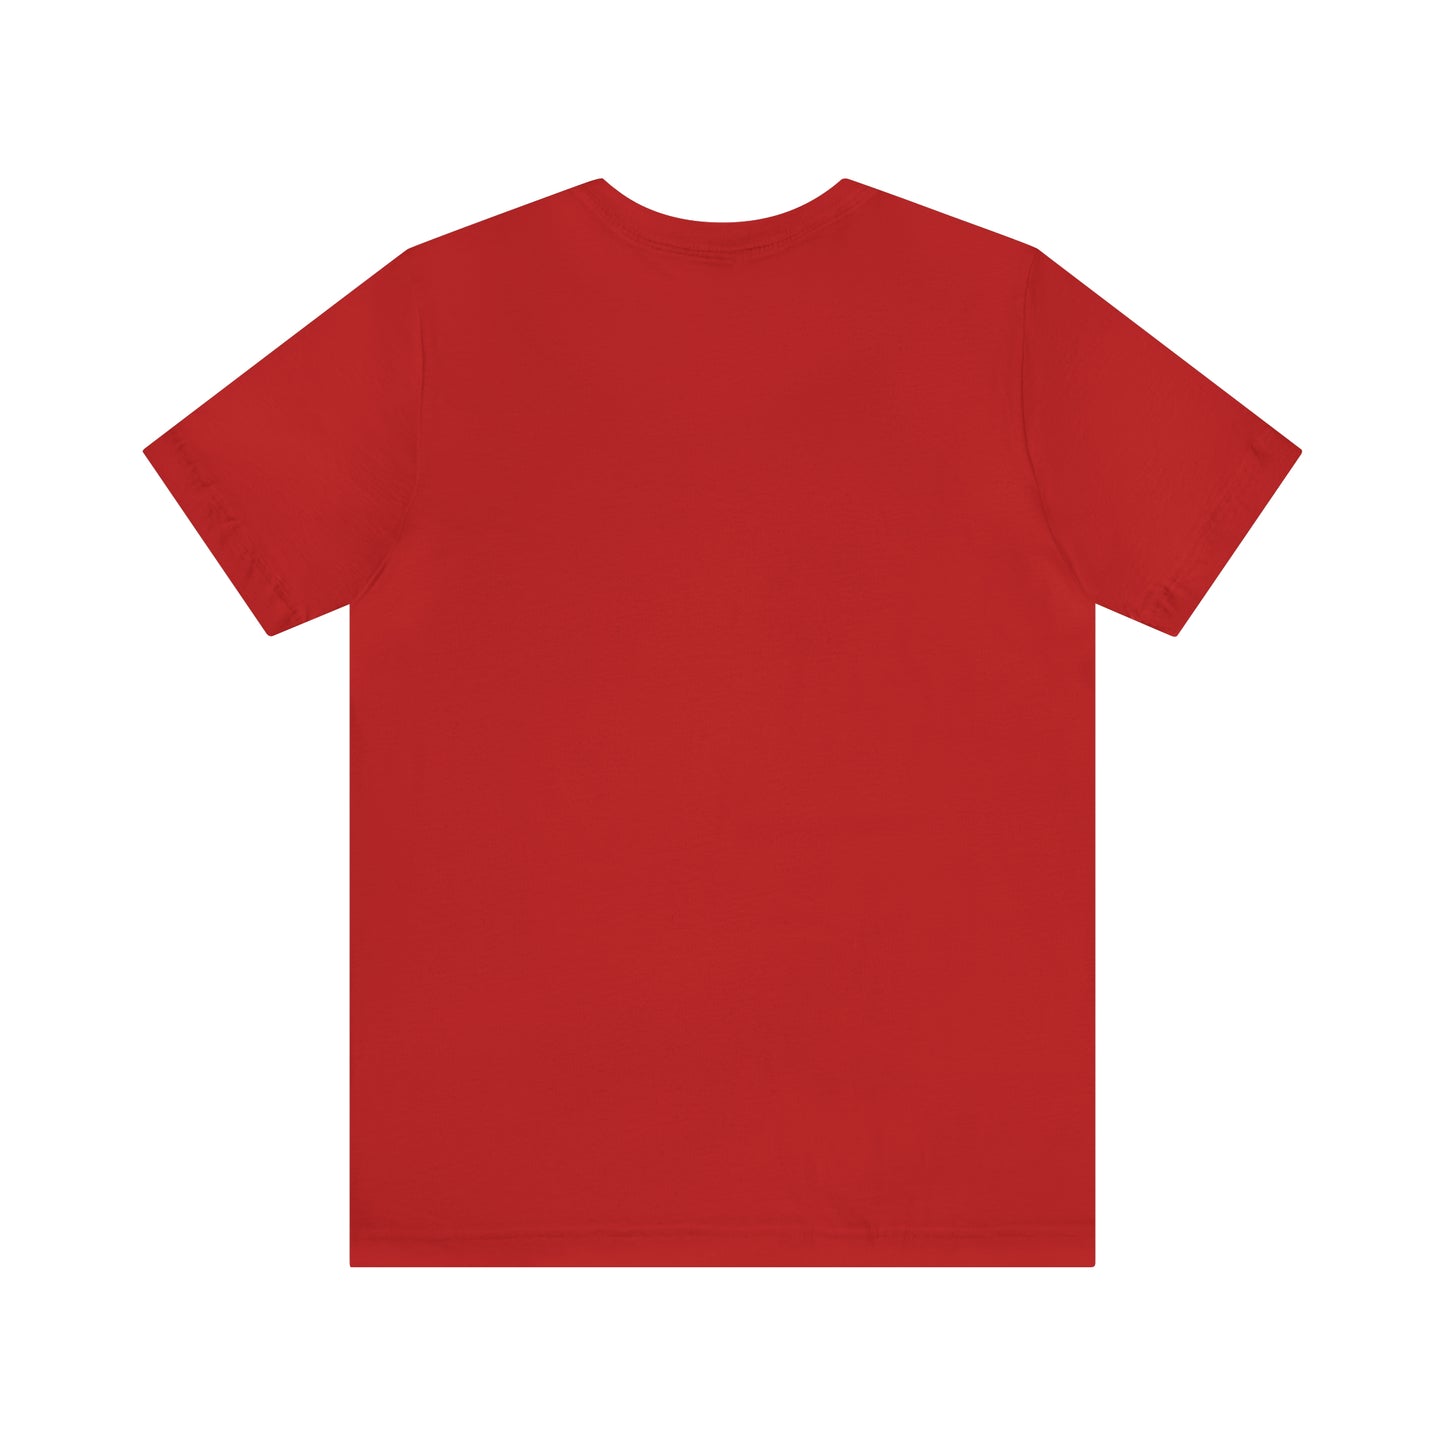 Pre-school Teacher Shirt, Kindergarten Teacher Shirt, ABCD Shirt, Cute Teacher Shirt, Nursery Teacher Shirt, T376